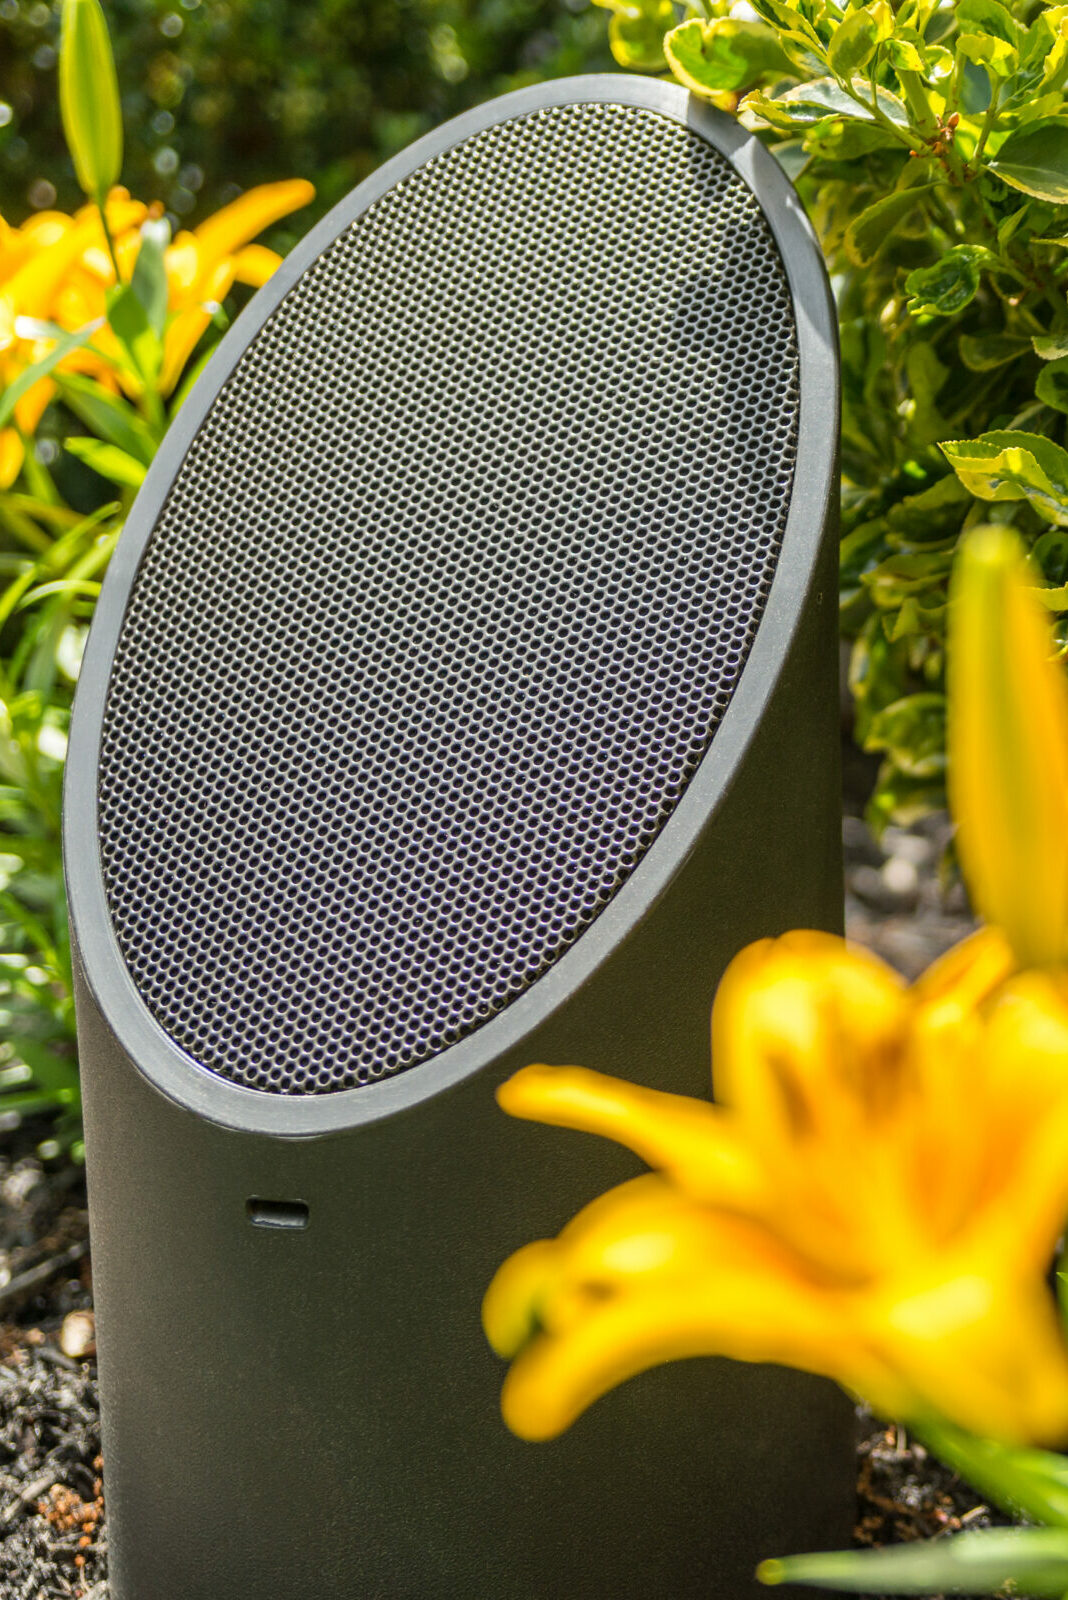 outdoor audio